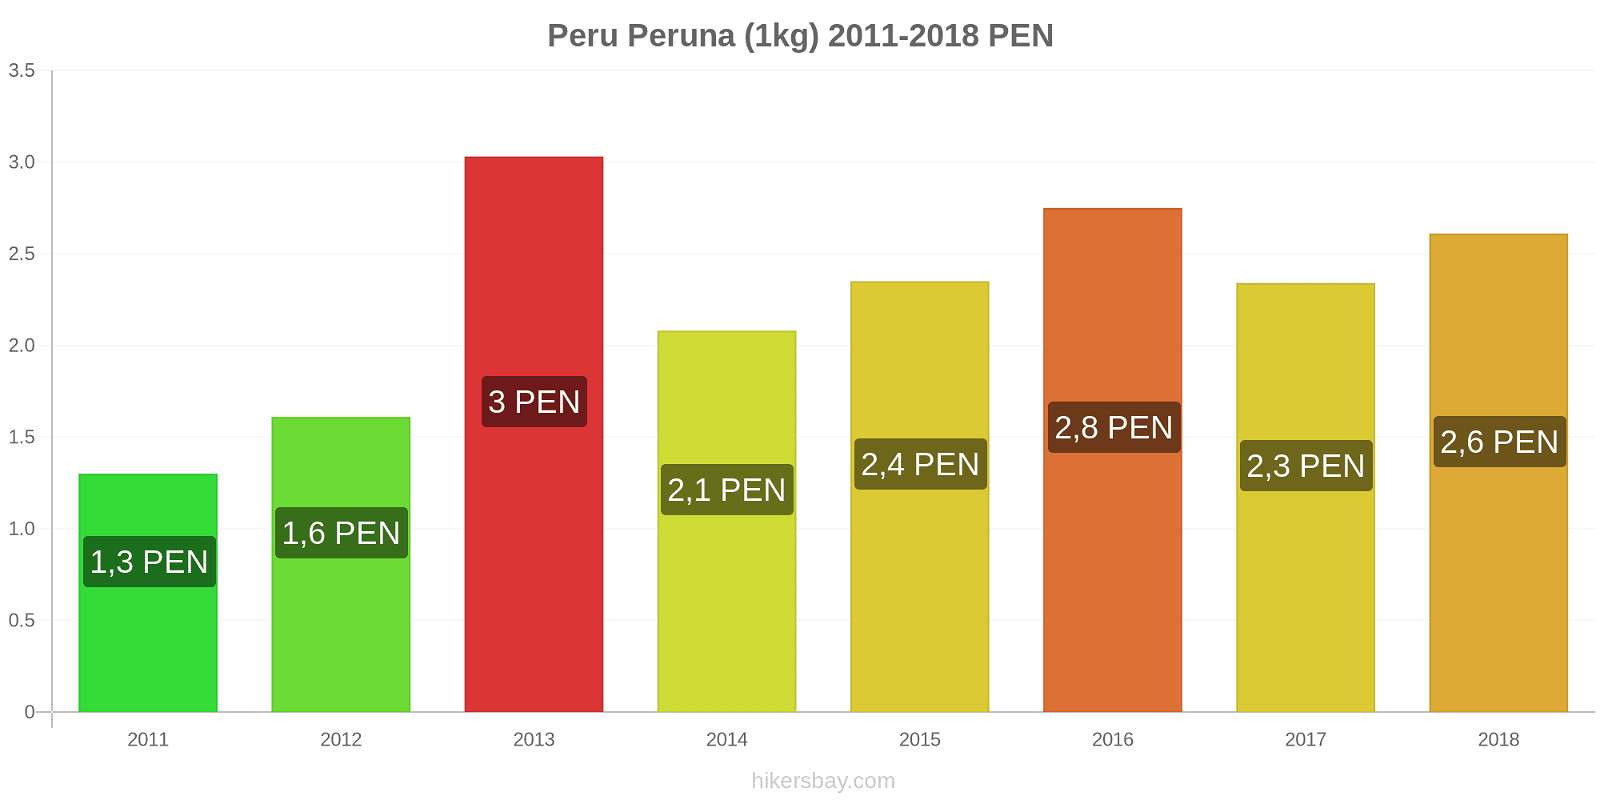 Peru hintojen muutokset Peruna (1kg) hikersbay.com